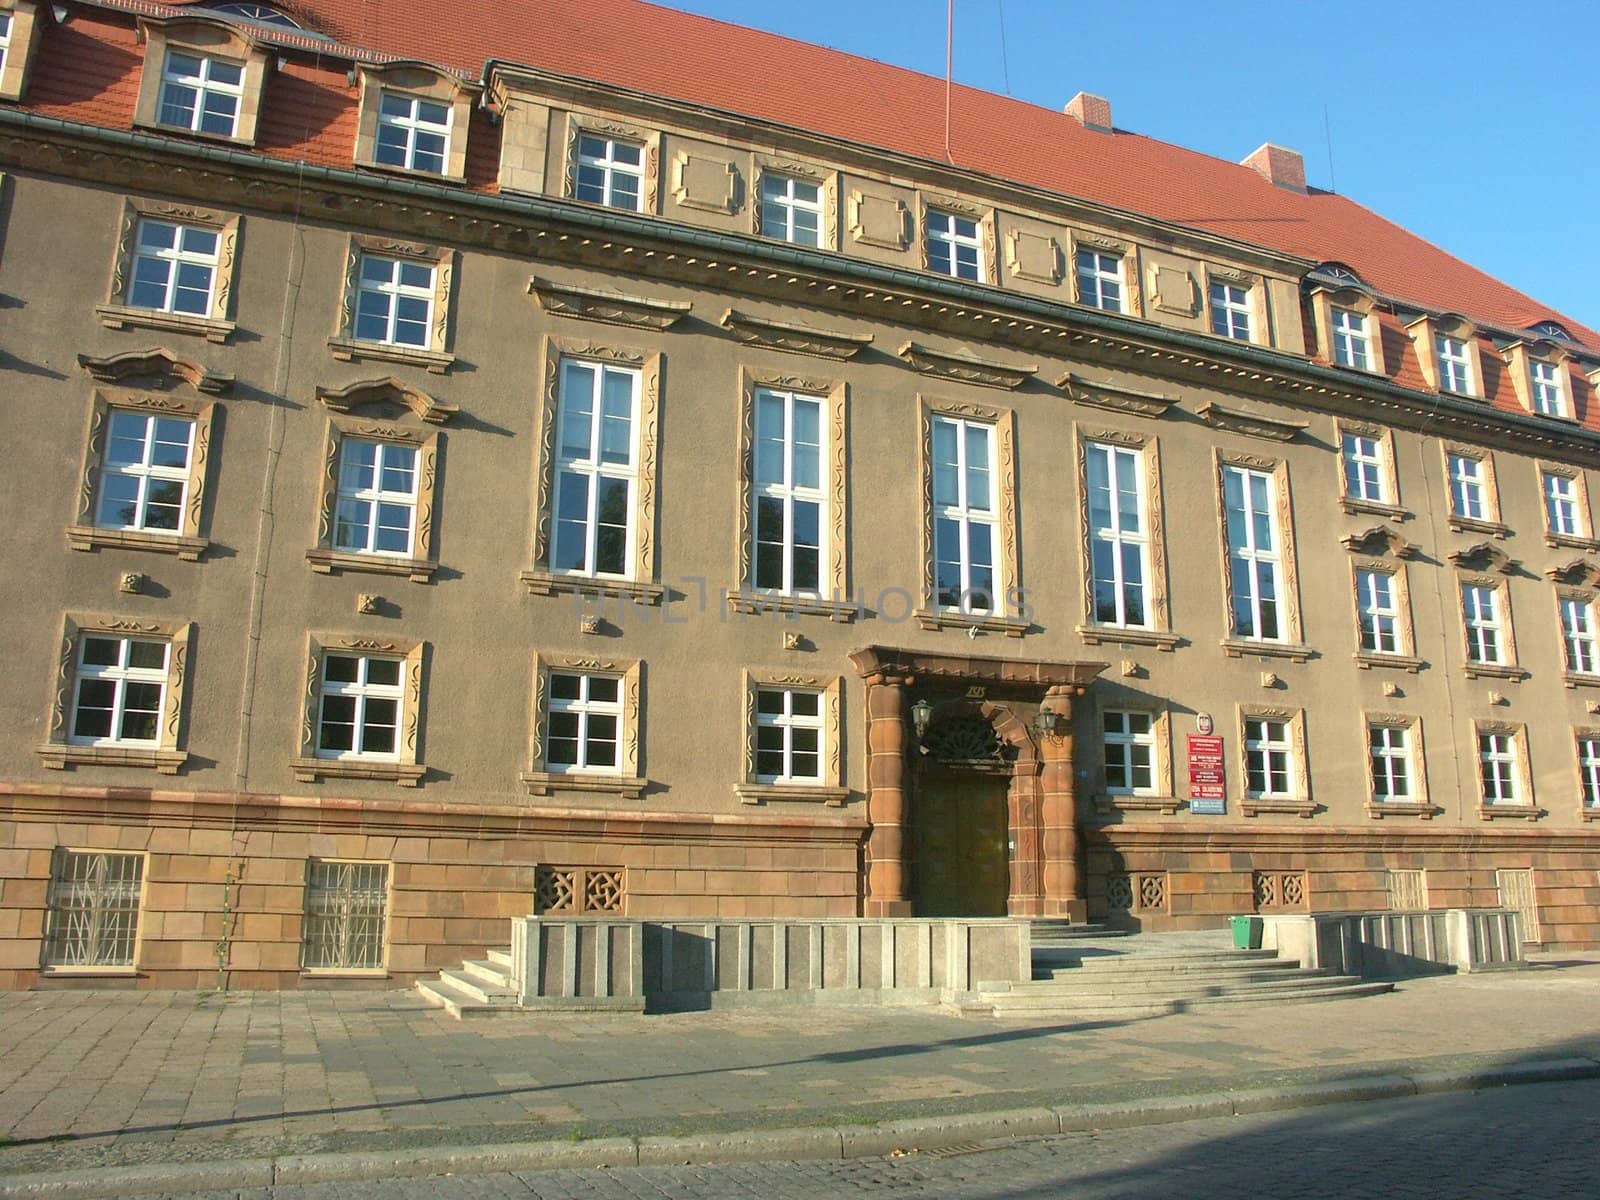 Social insurance institution in Wroclaw by wojciechkozlowski